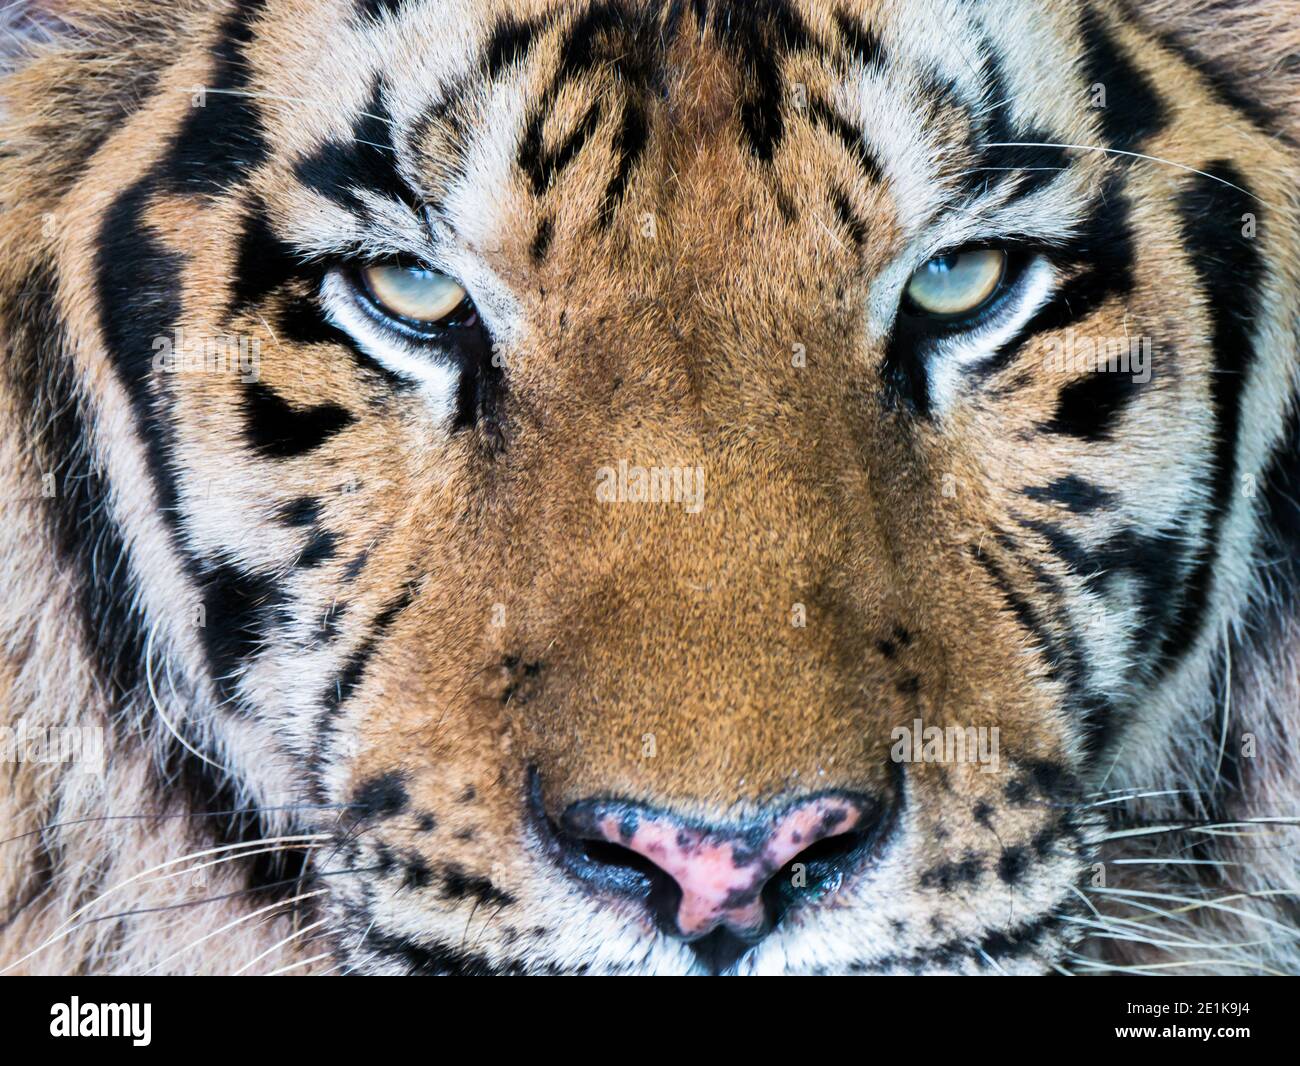 Tigergesicht mit Augen konzentrieren sich auf die Kamera Stockfoto